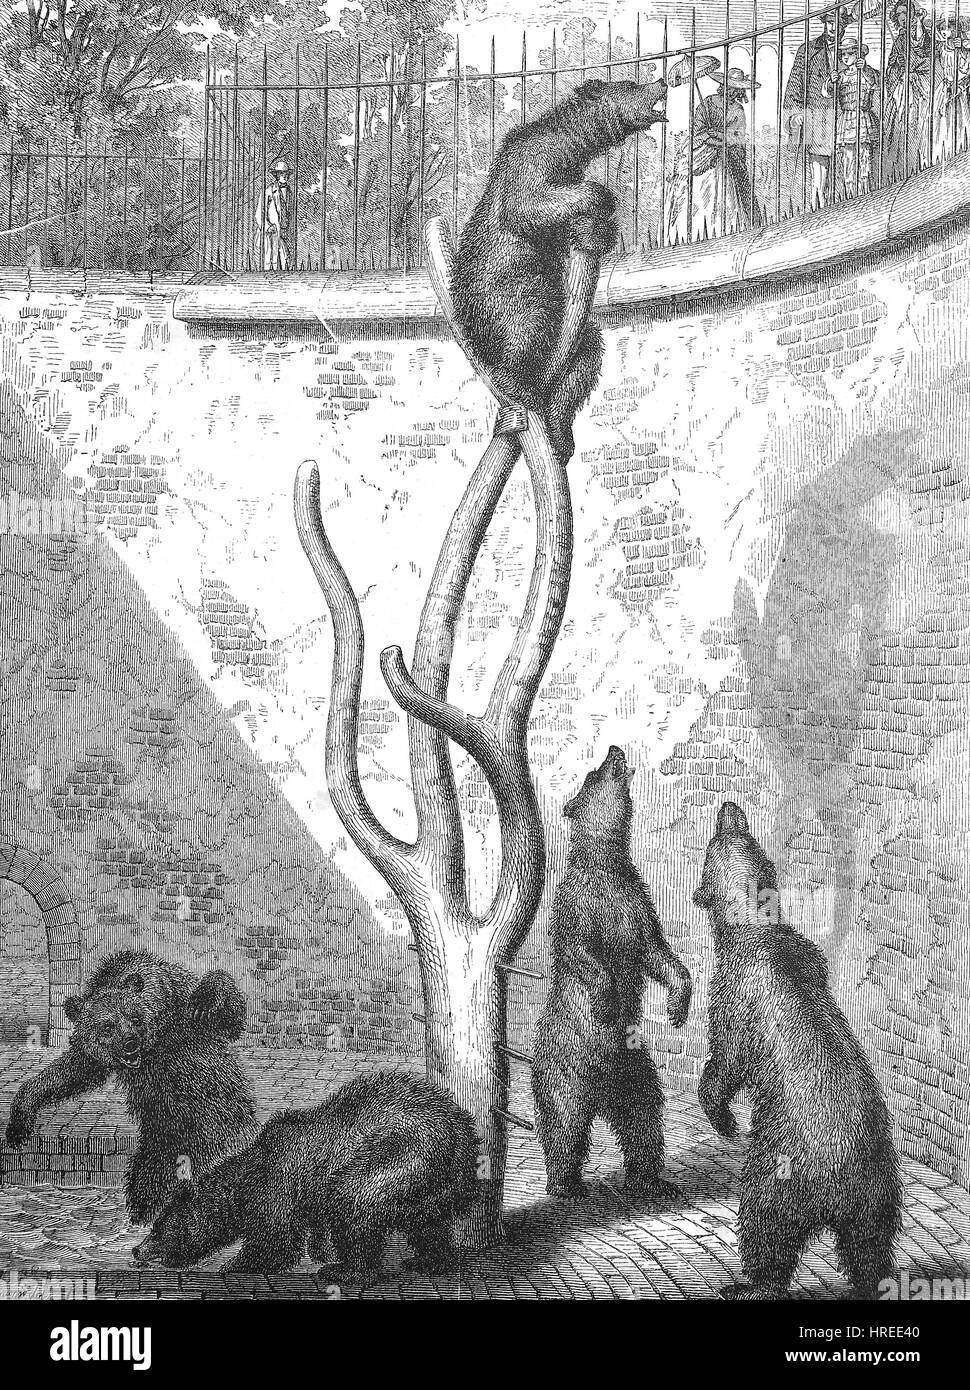 Bären in den Bärengraben des Zoologischen Gartens von Berlin, einen Artikel in - Die Gartenlaube - illustrierte Familie Blatt, Reproduktion von einem Holzschnitt aus dem 19. Jahrhundert, 1885 Stockfoto